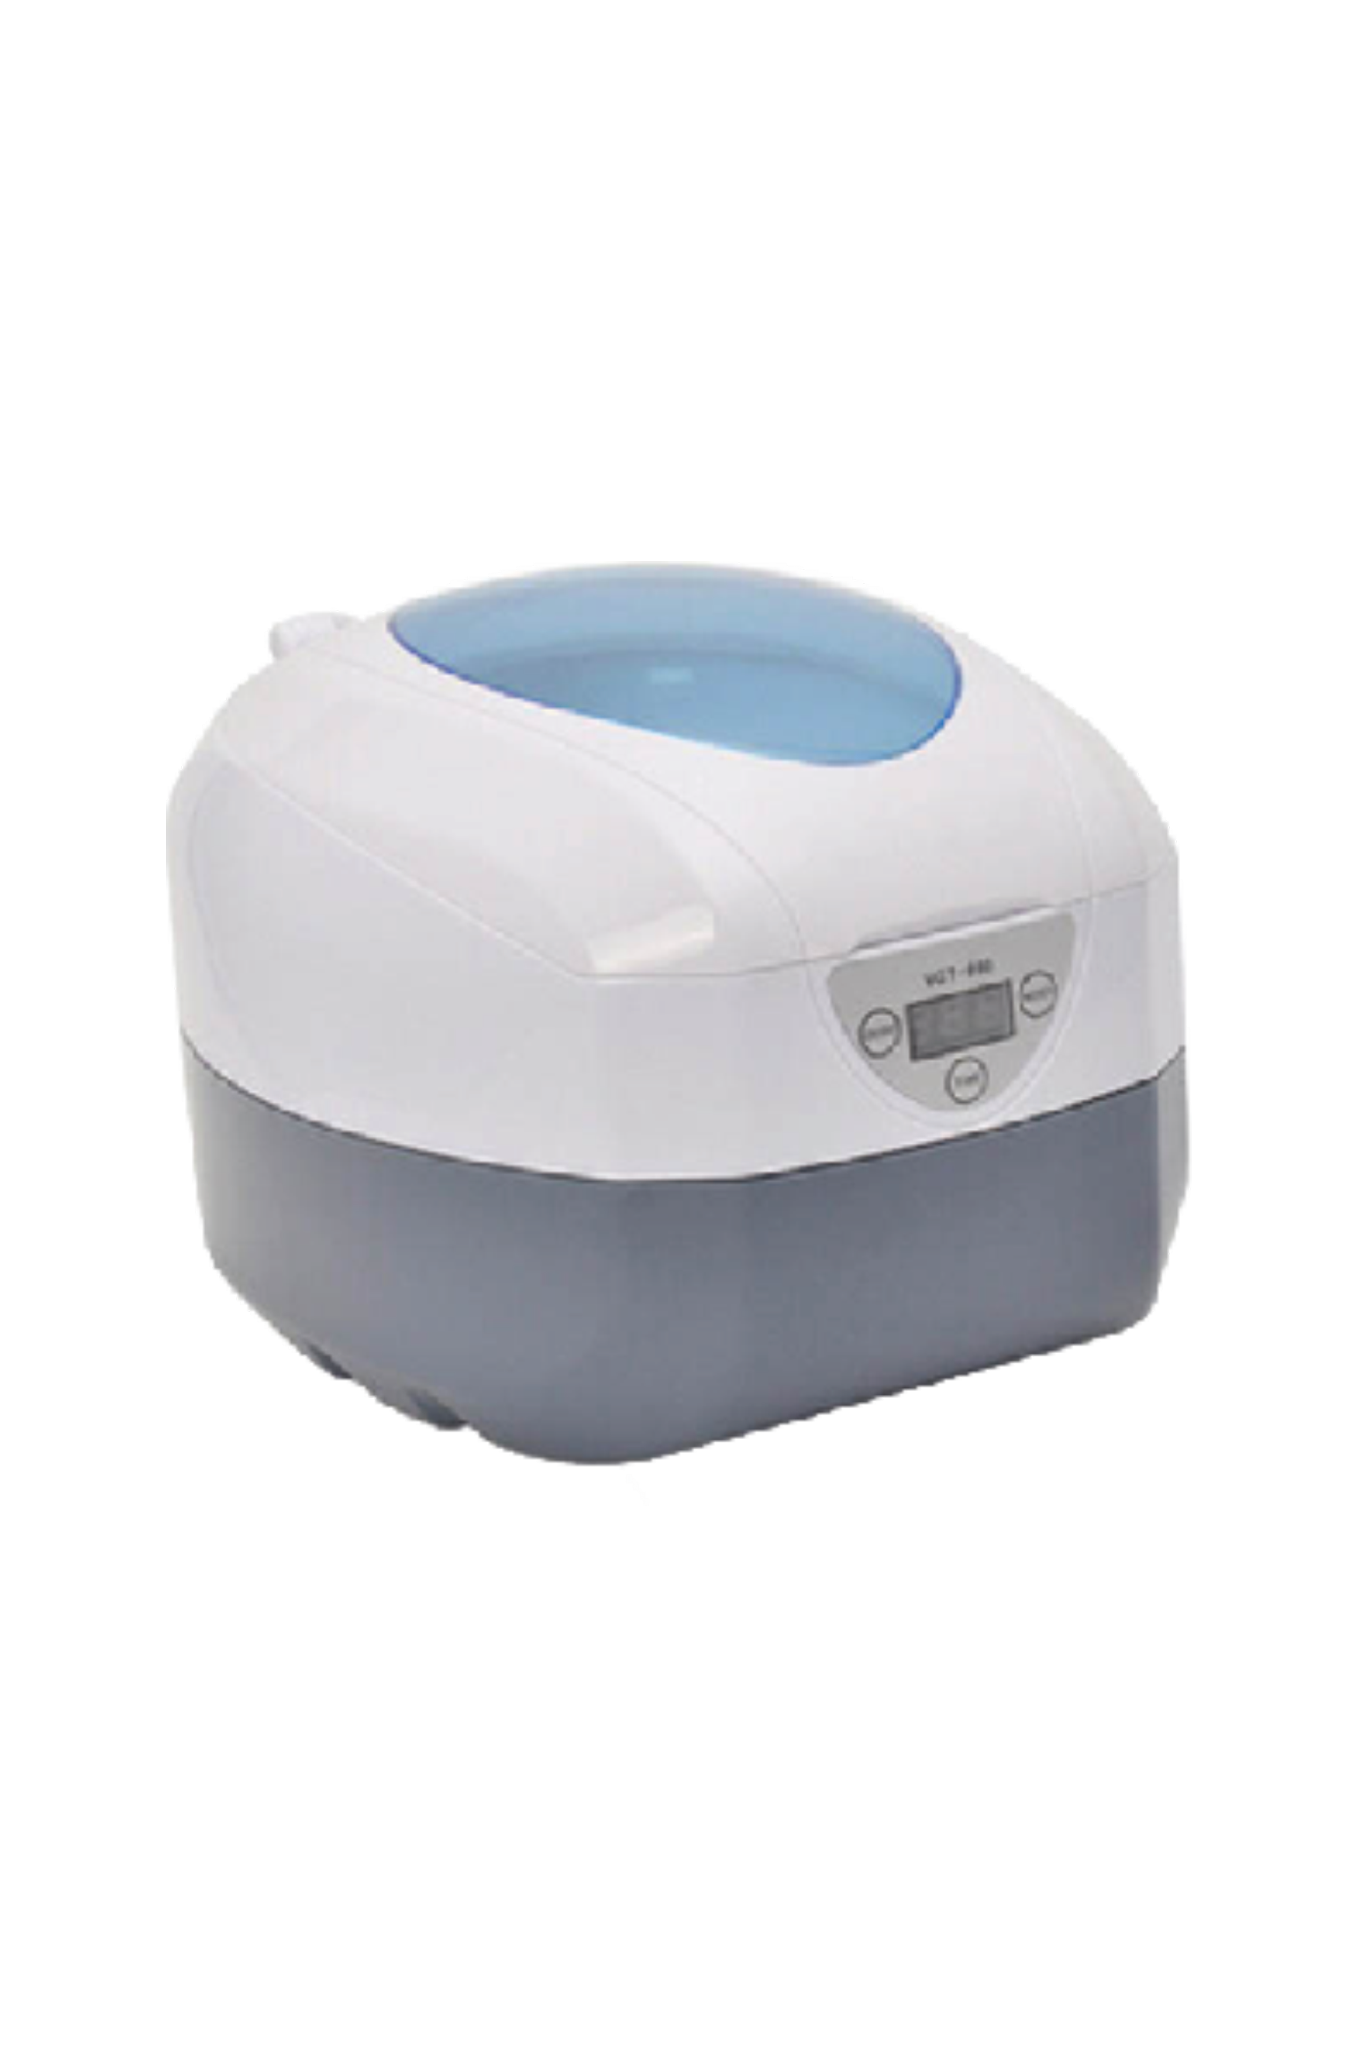 灵科超声波便携式小型清洗机750ml